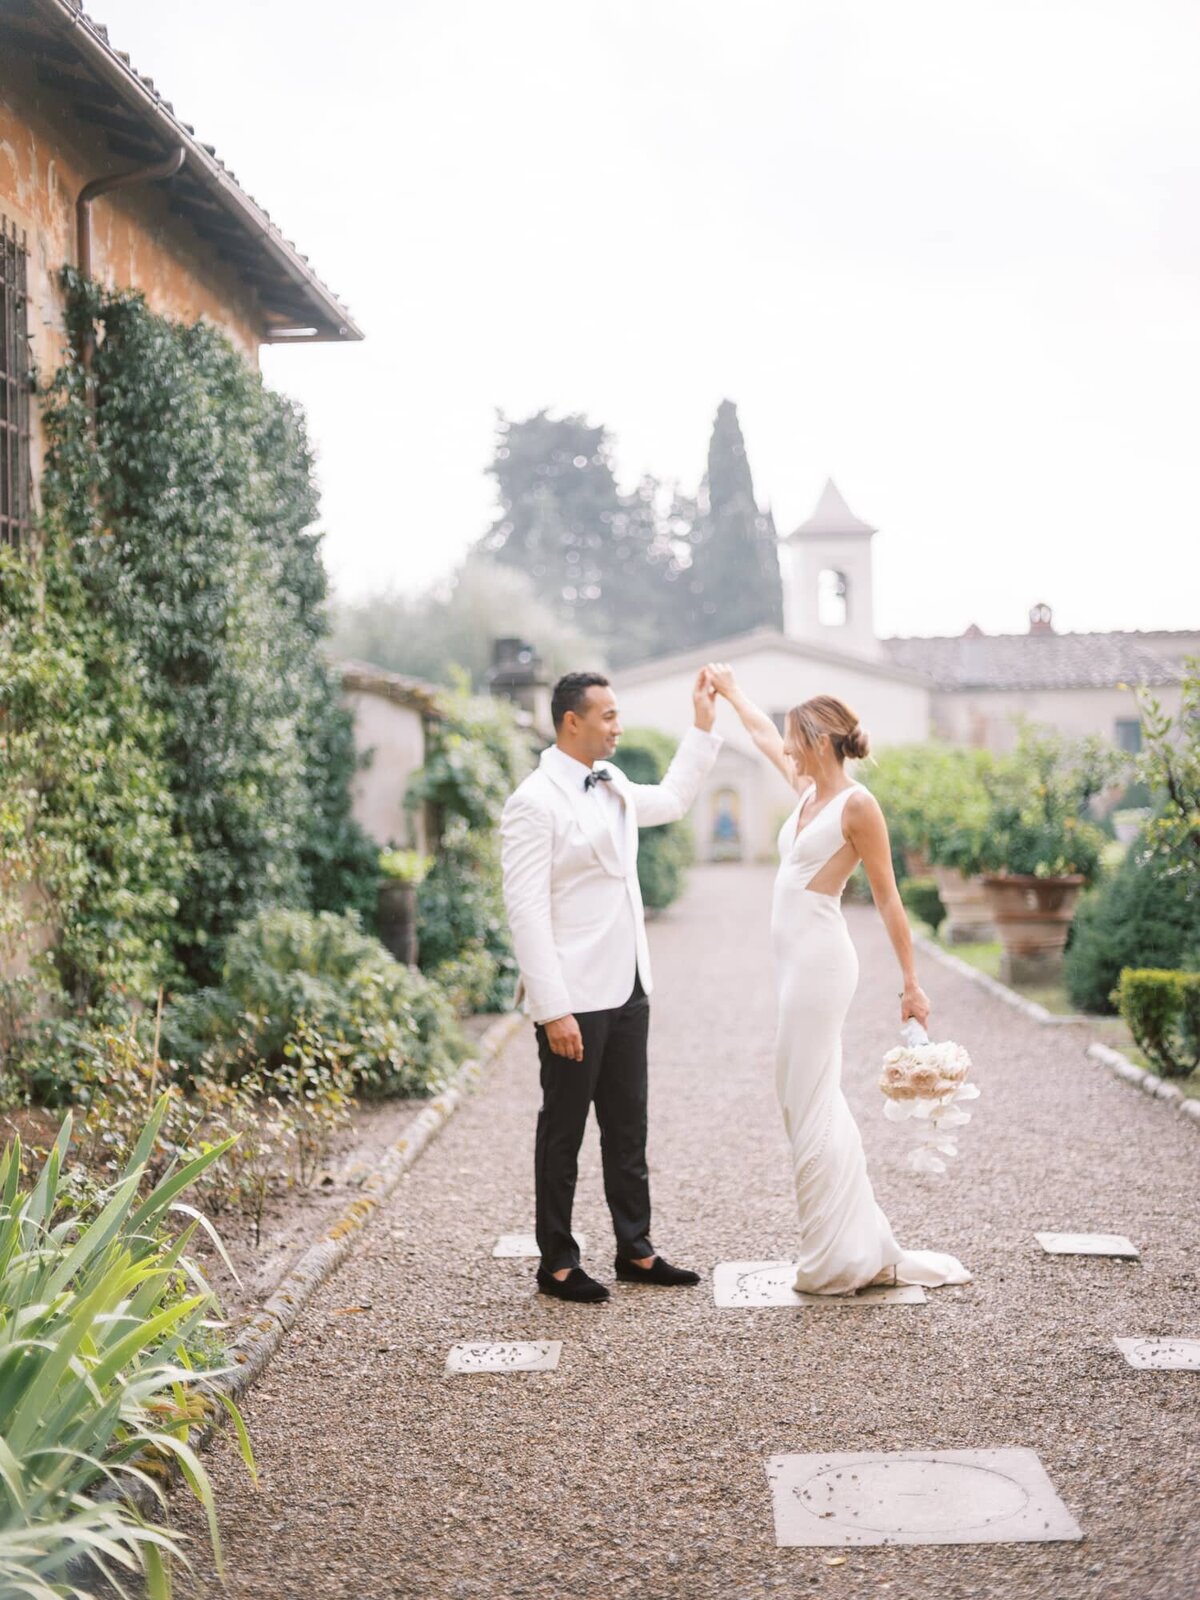 AndreasKGeorgiou-Tuscany-wedding-Italy-64